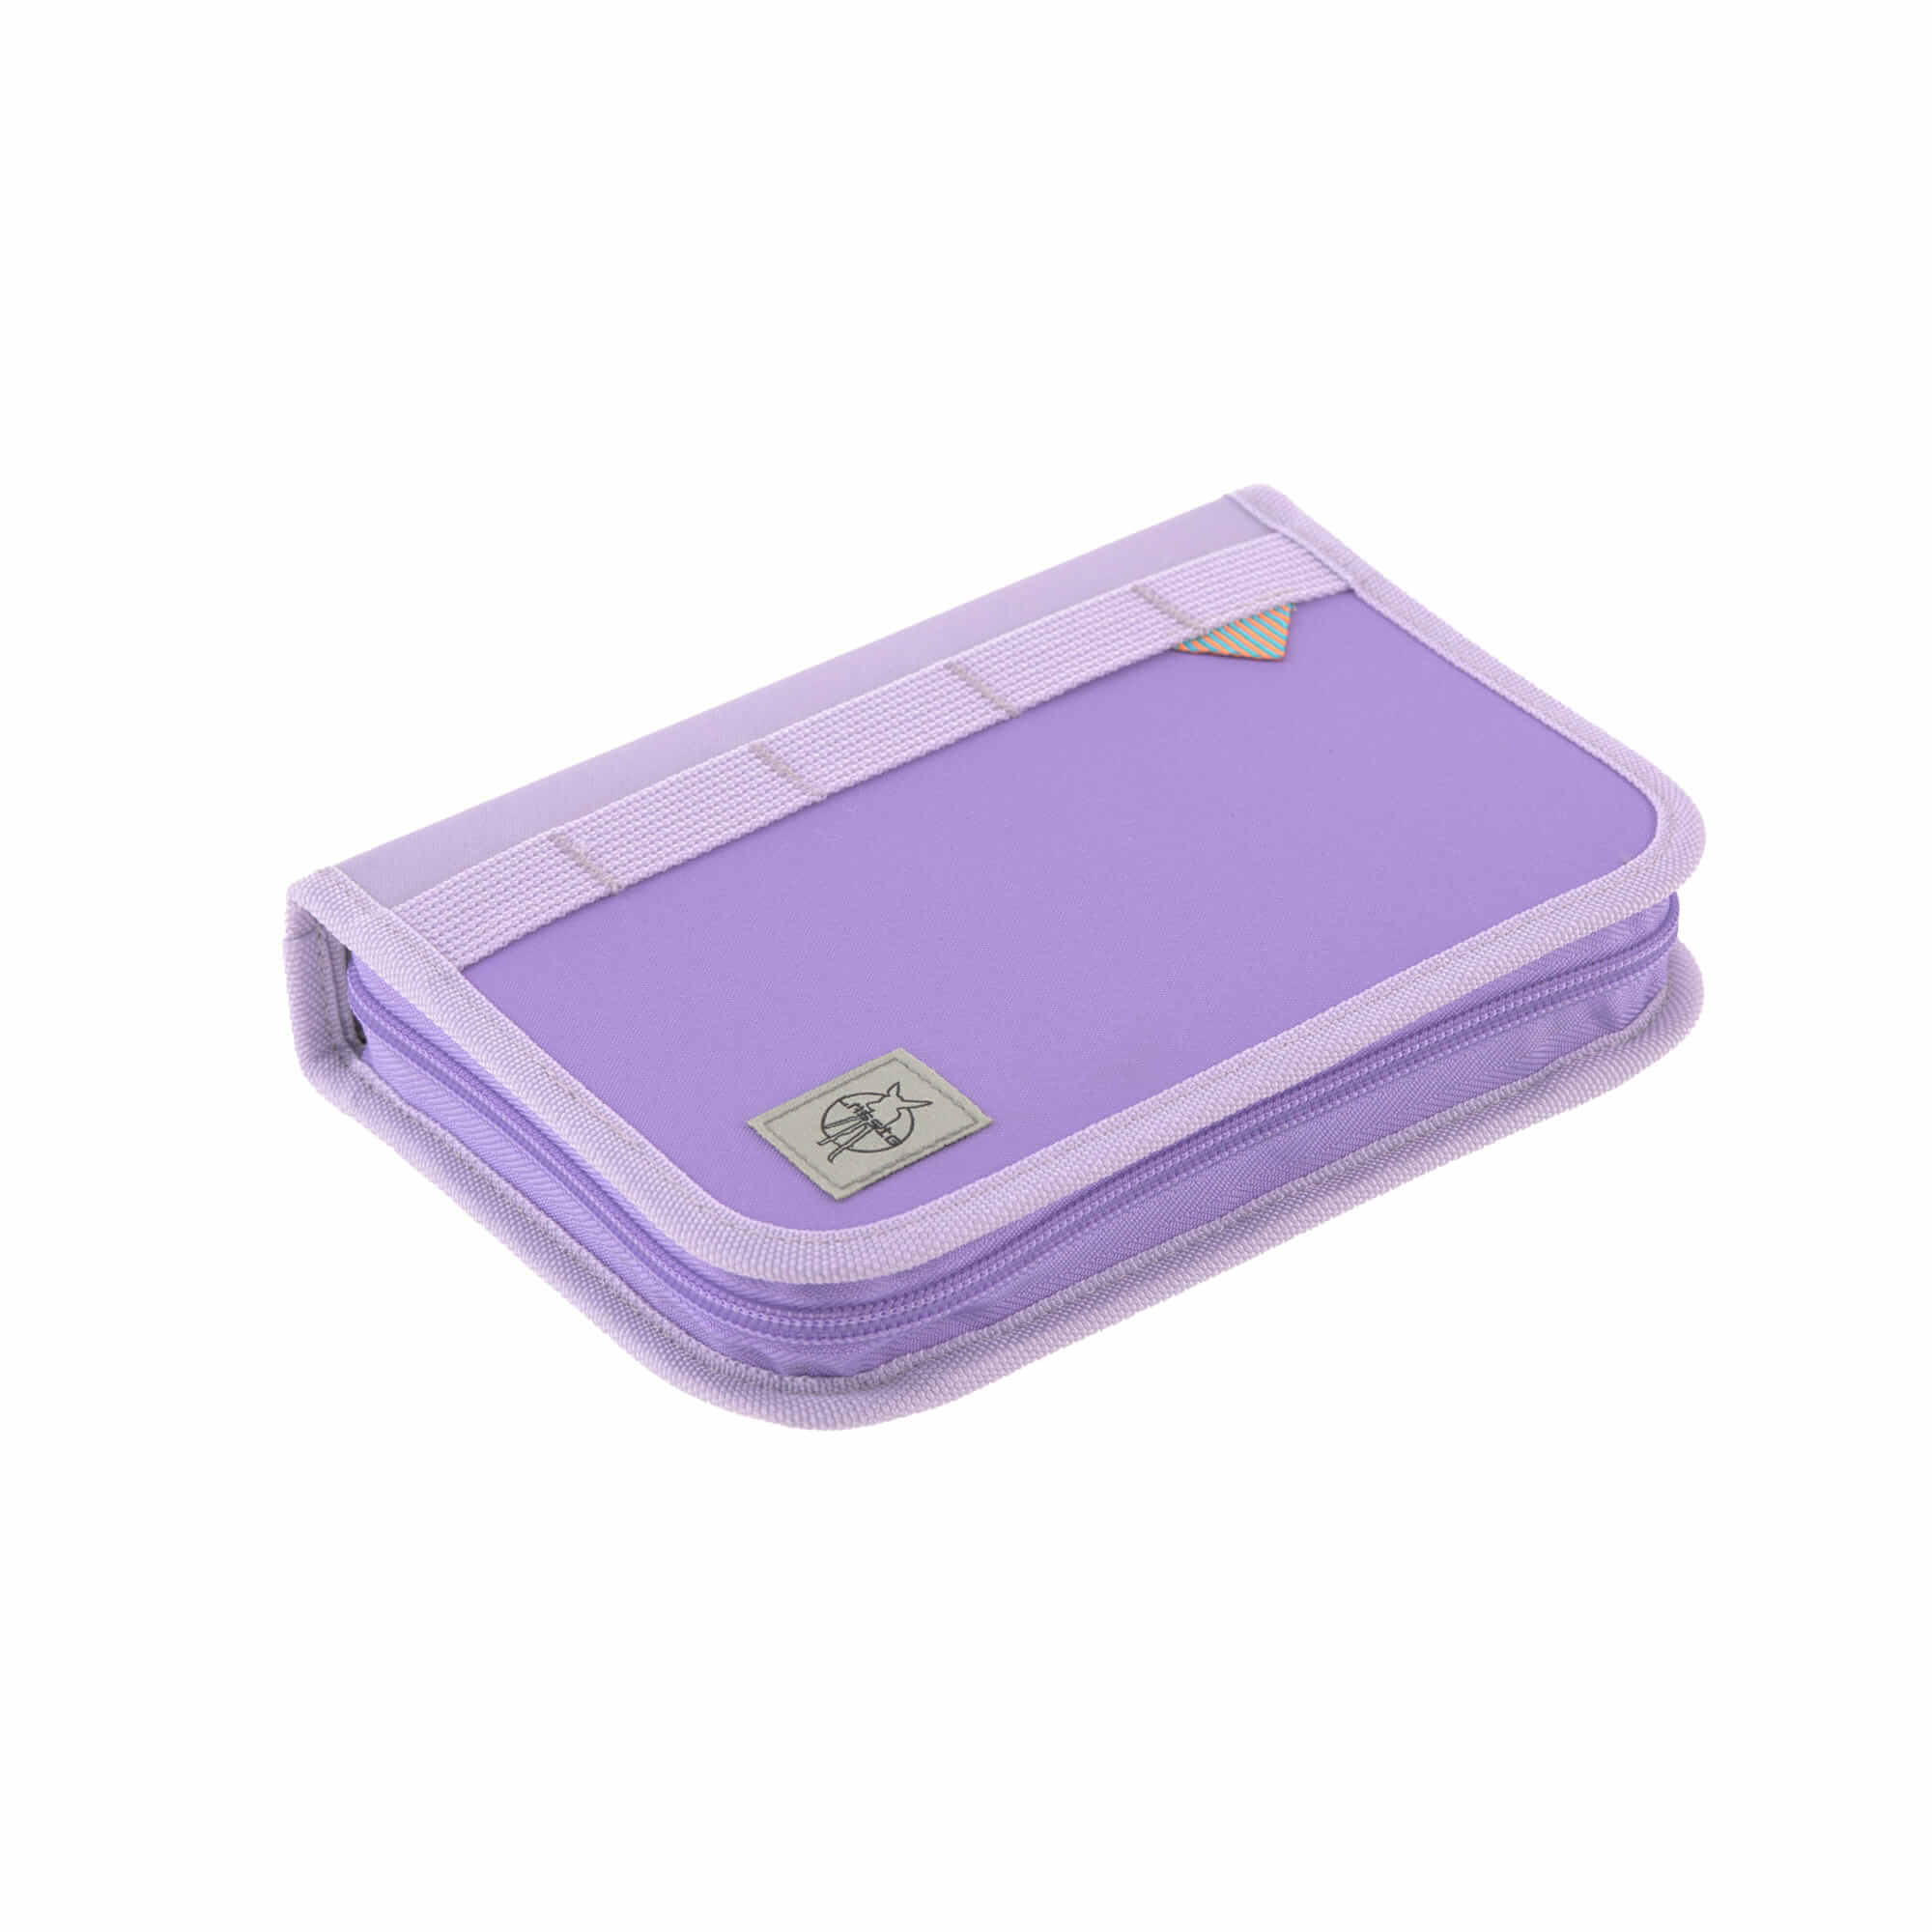 Schulranzen Set Boxy Unique Lässig Fashion- Violet/Lavender